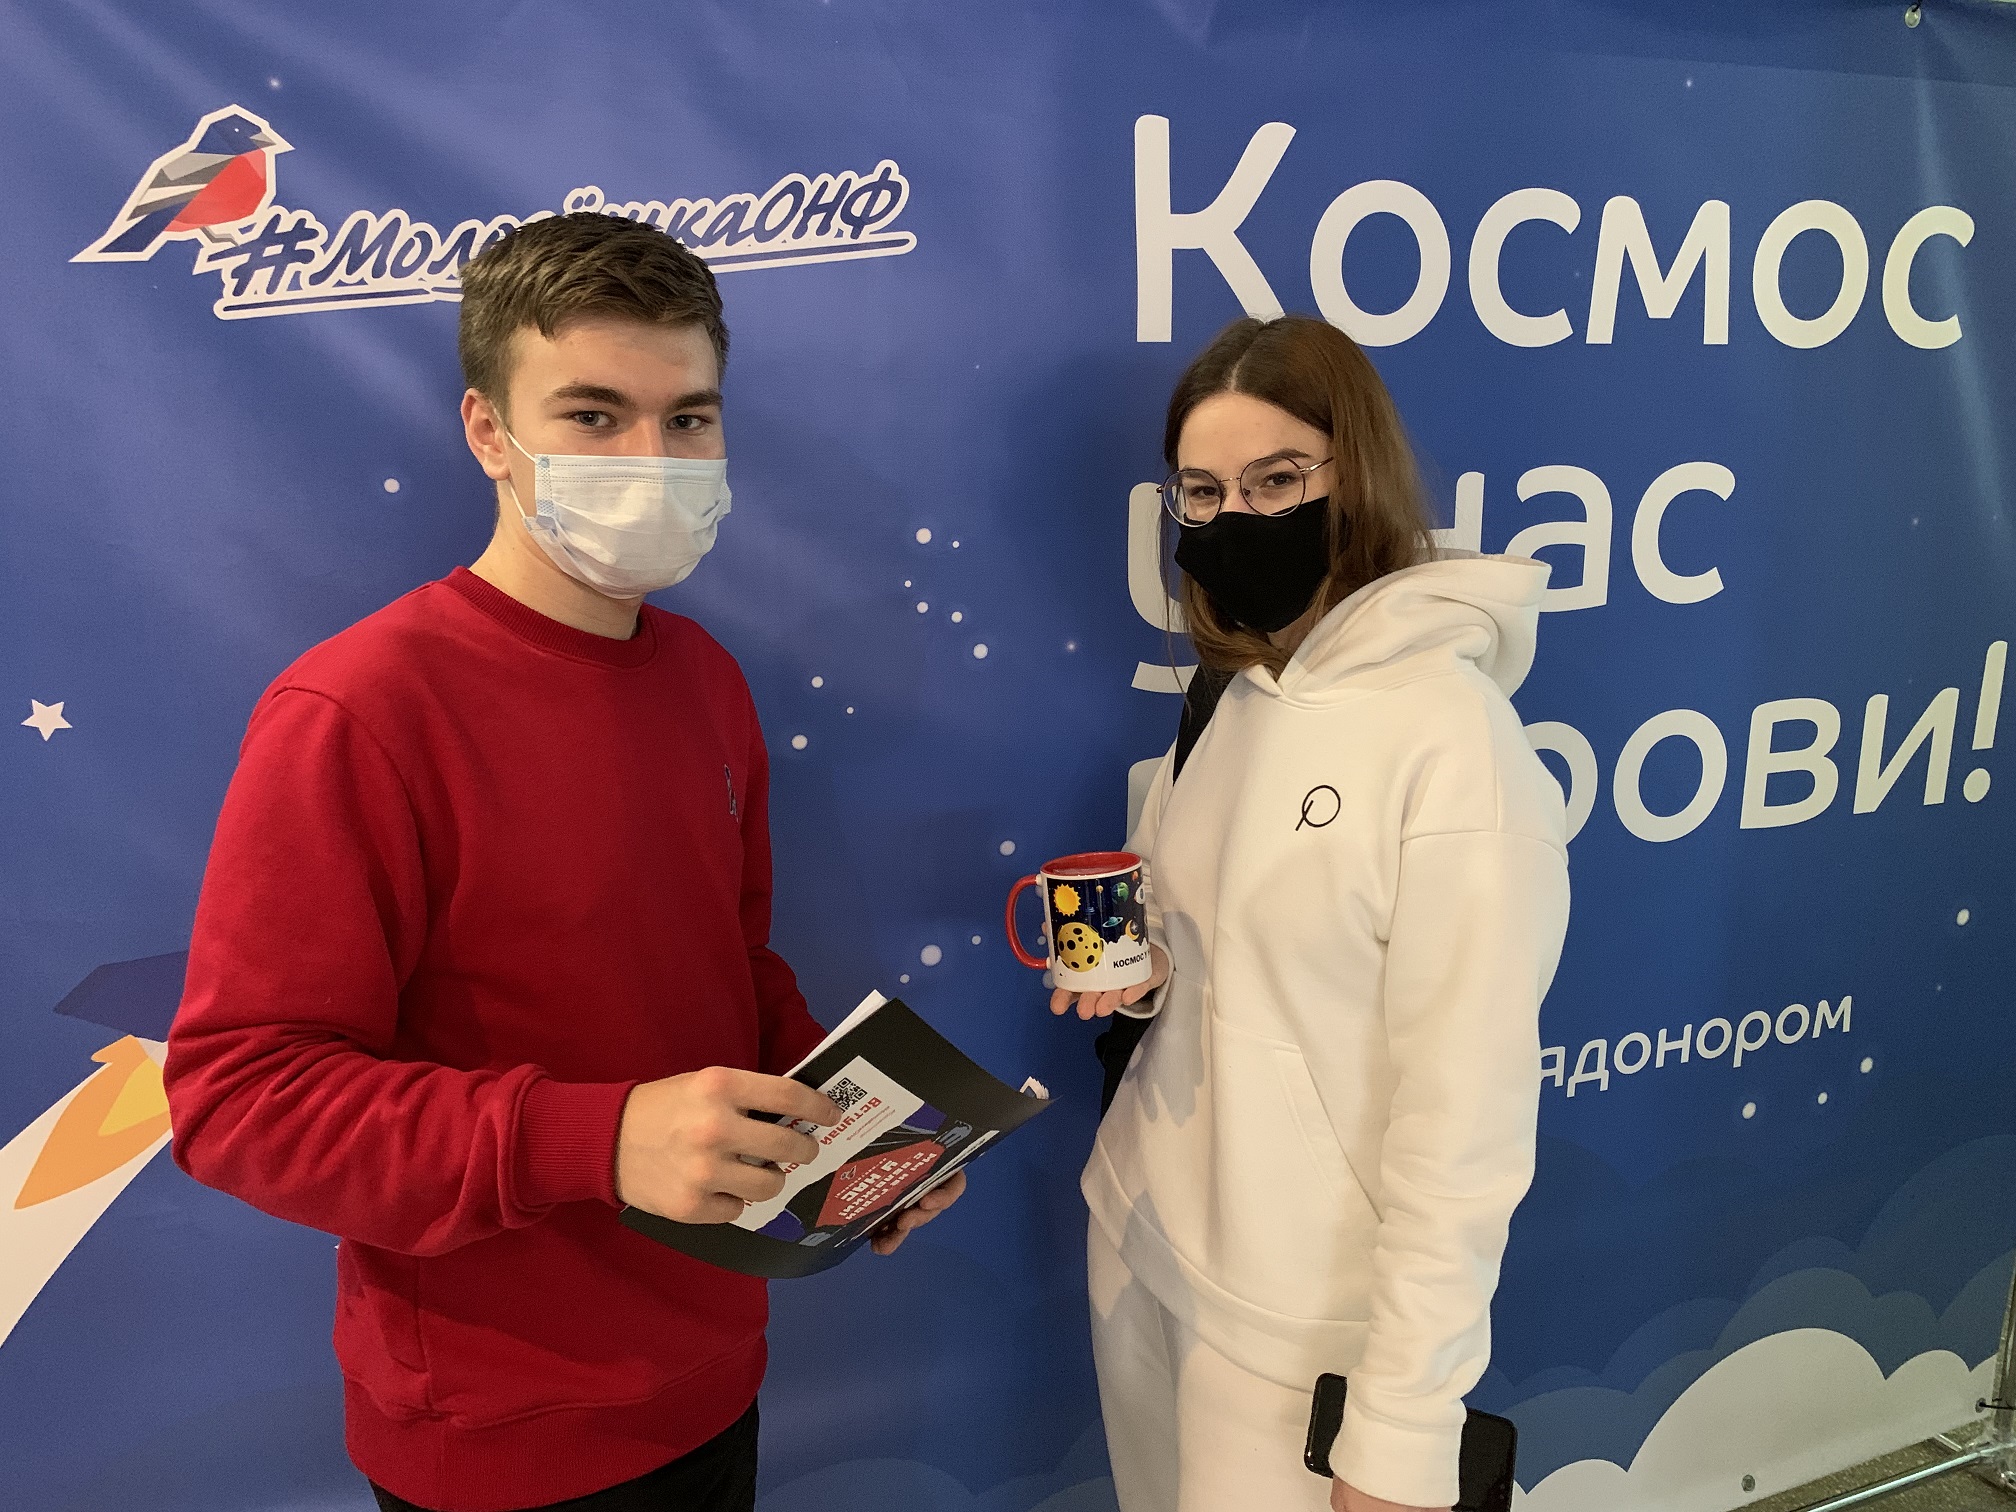 Цвет холодных звезд и значение лейкоцитов. В Екатеринбурге стартовал марафон «Космос у нас в крови»